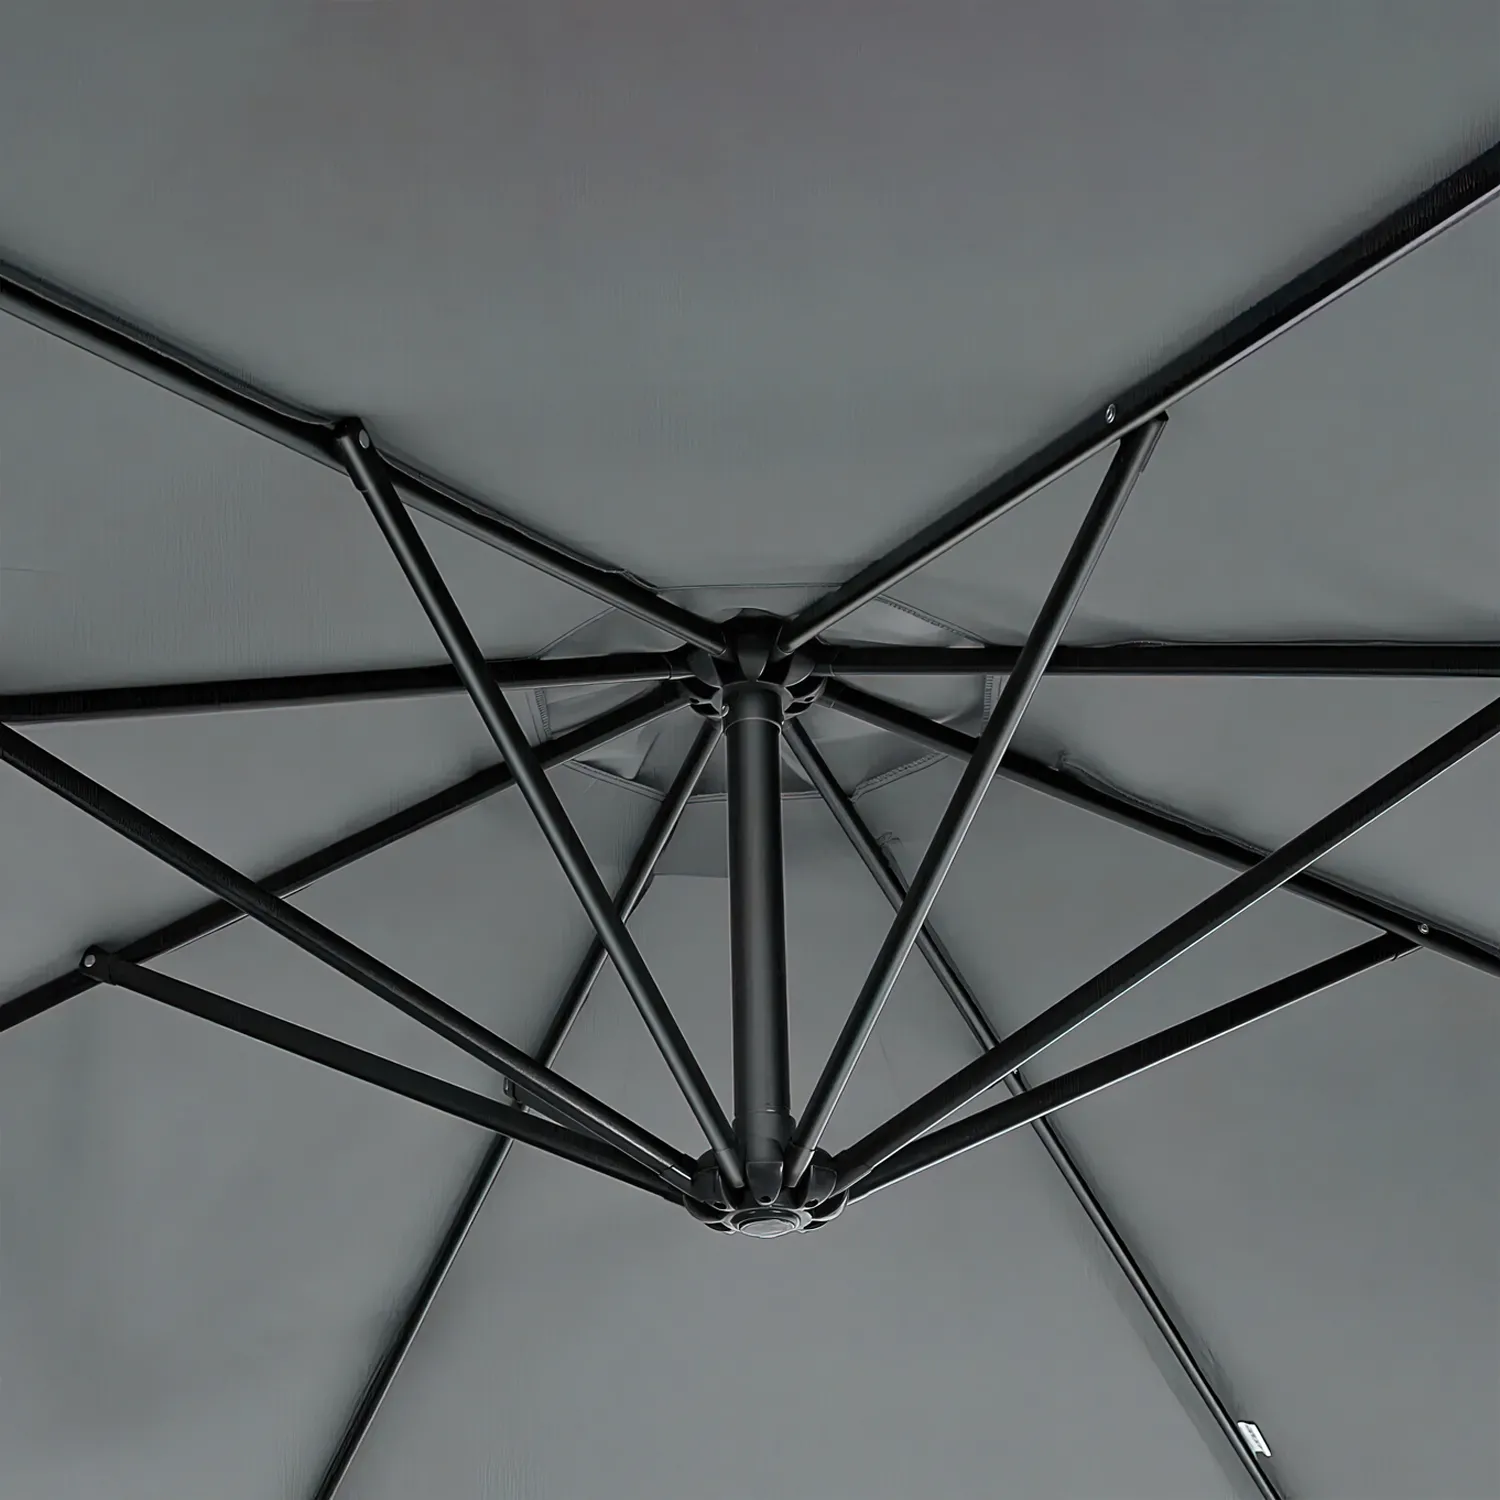 Зонт JUMI 300 см (серый)